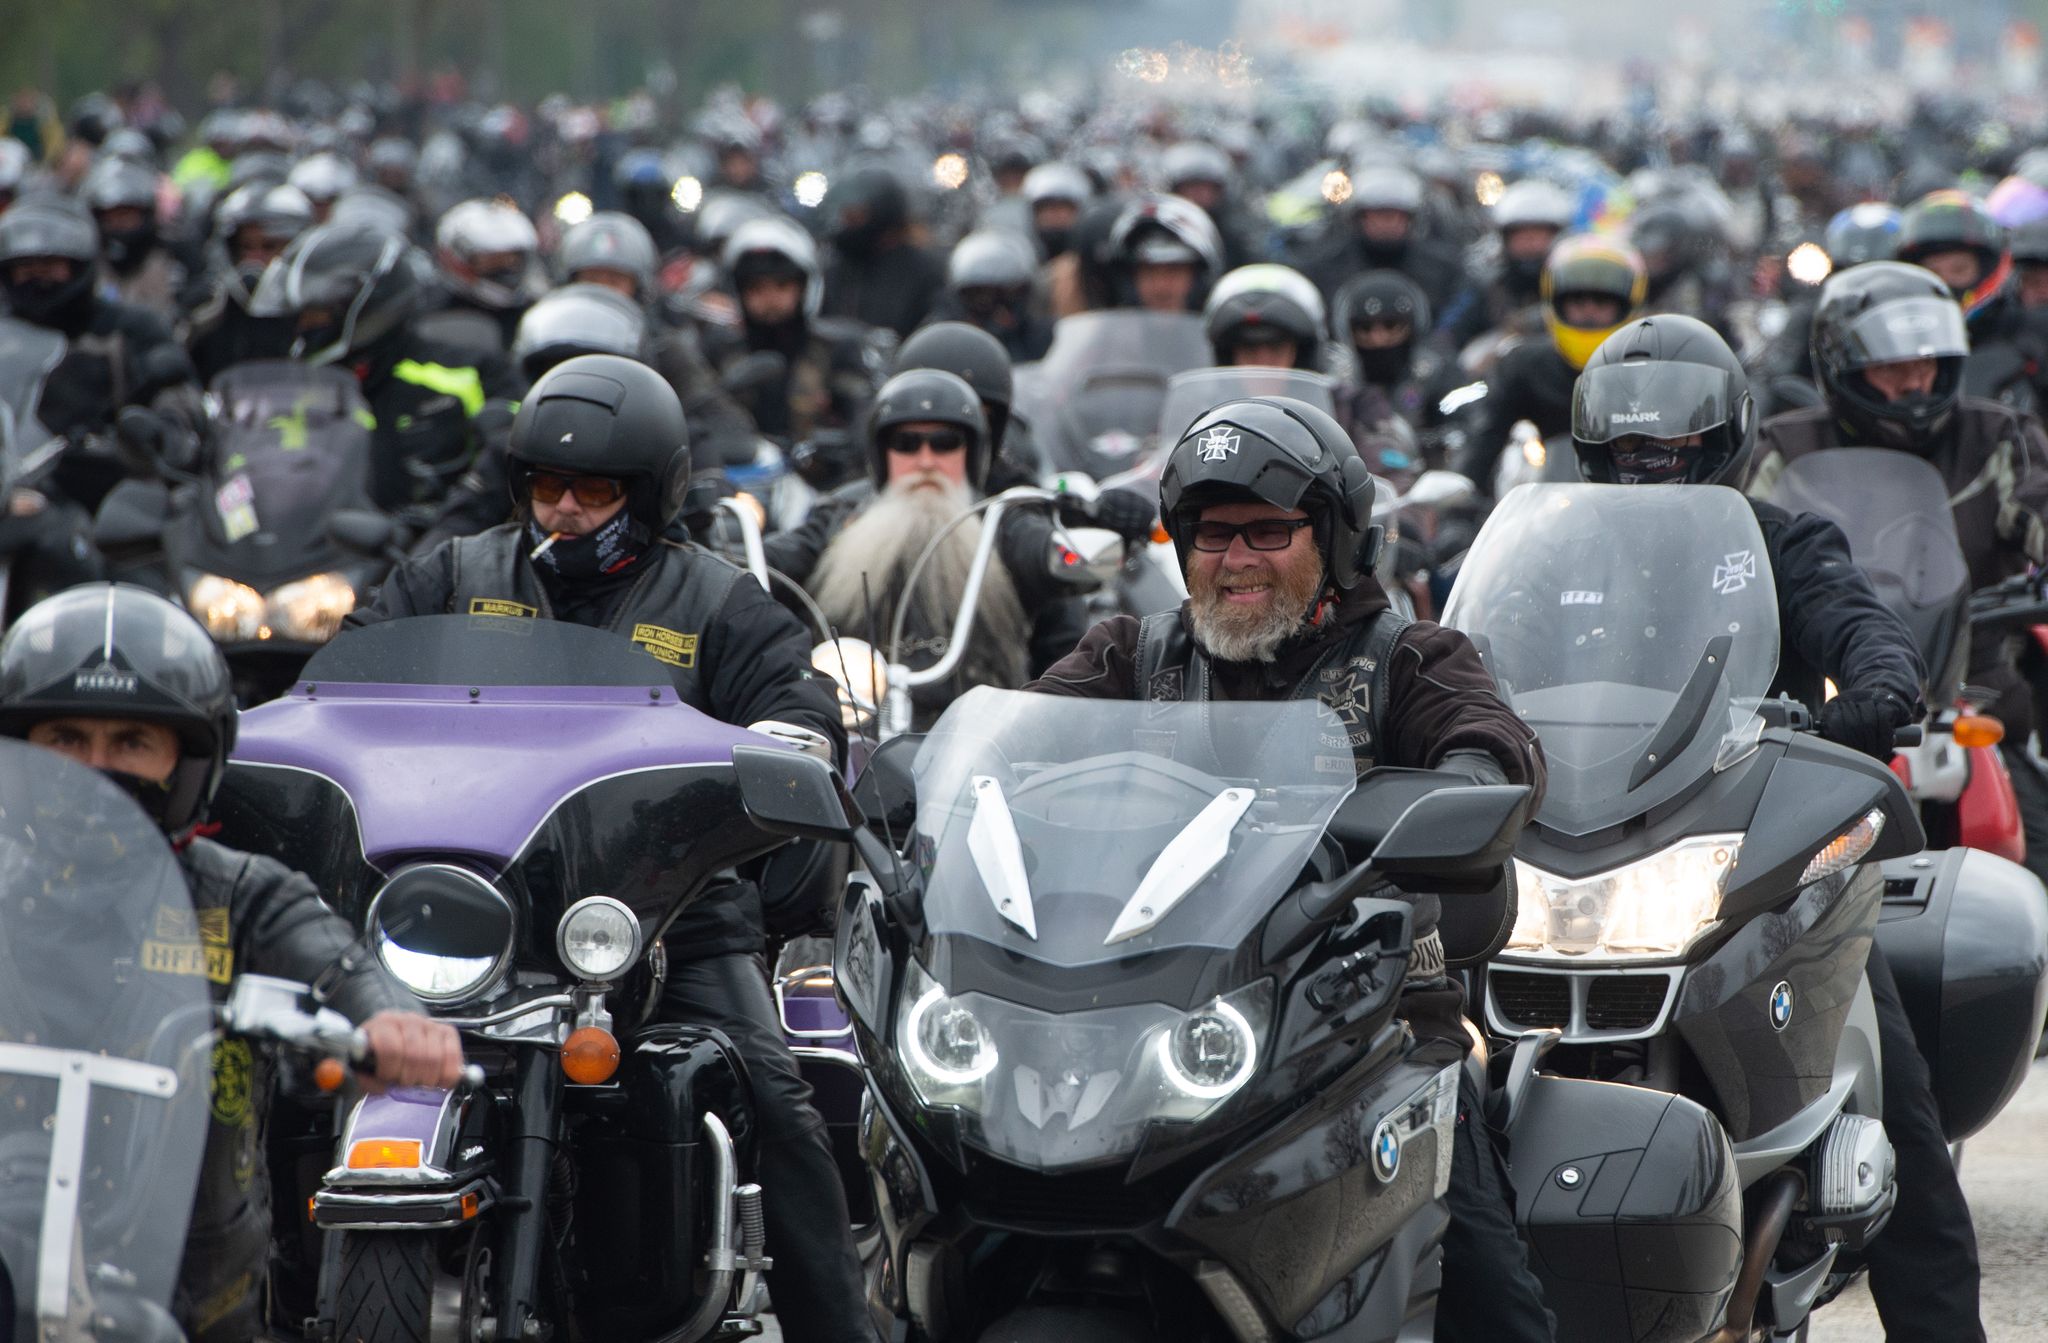 rund 25.000 biker bei treffen in nürnberg - usk im einsatz